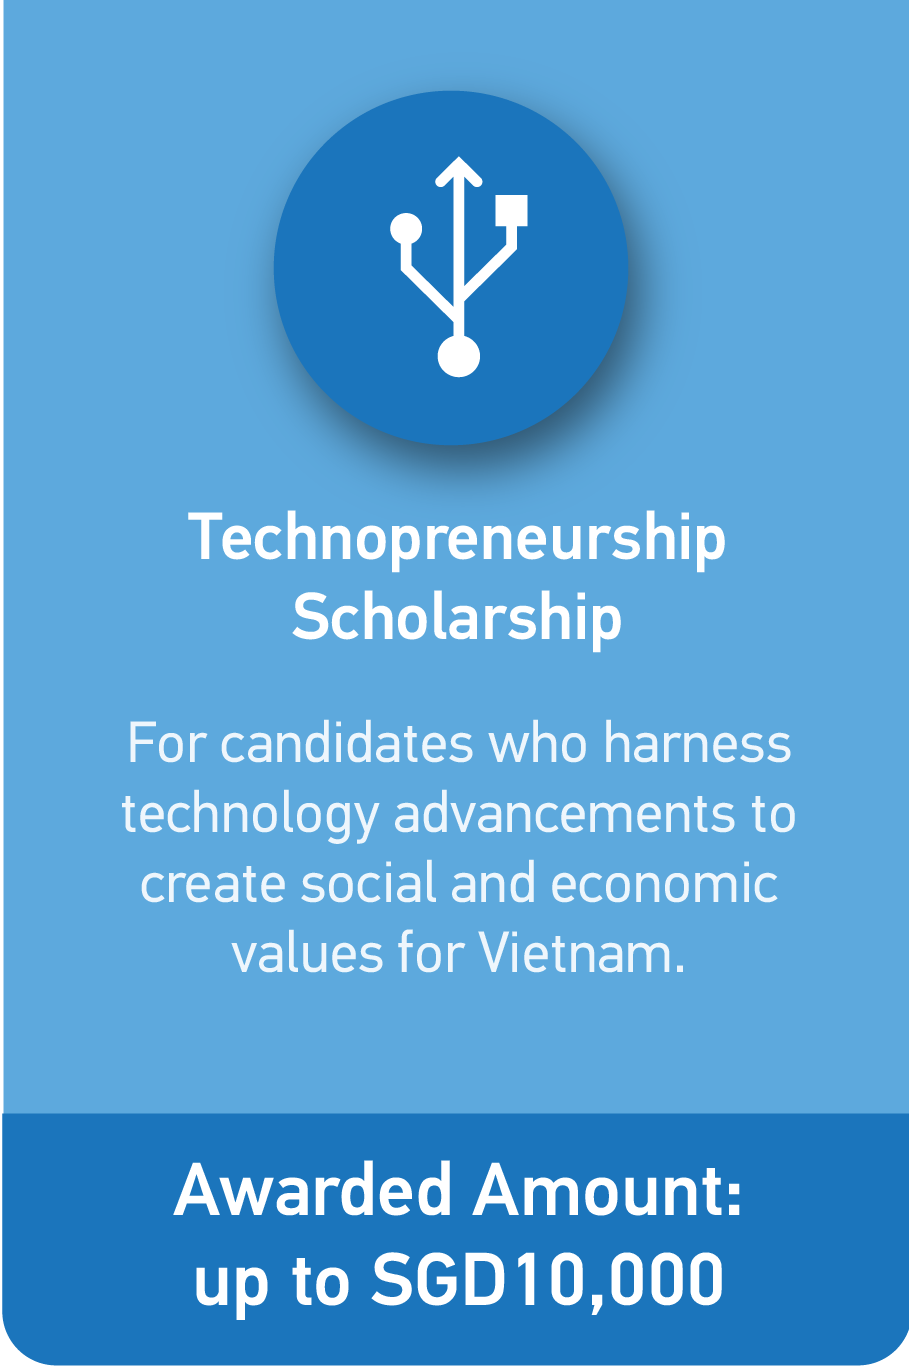 NTU IMBA Technopreneruship Scholarship